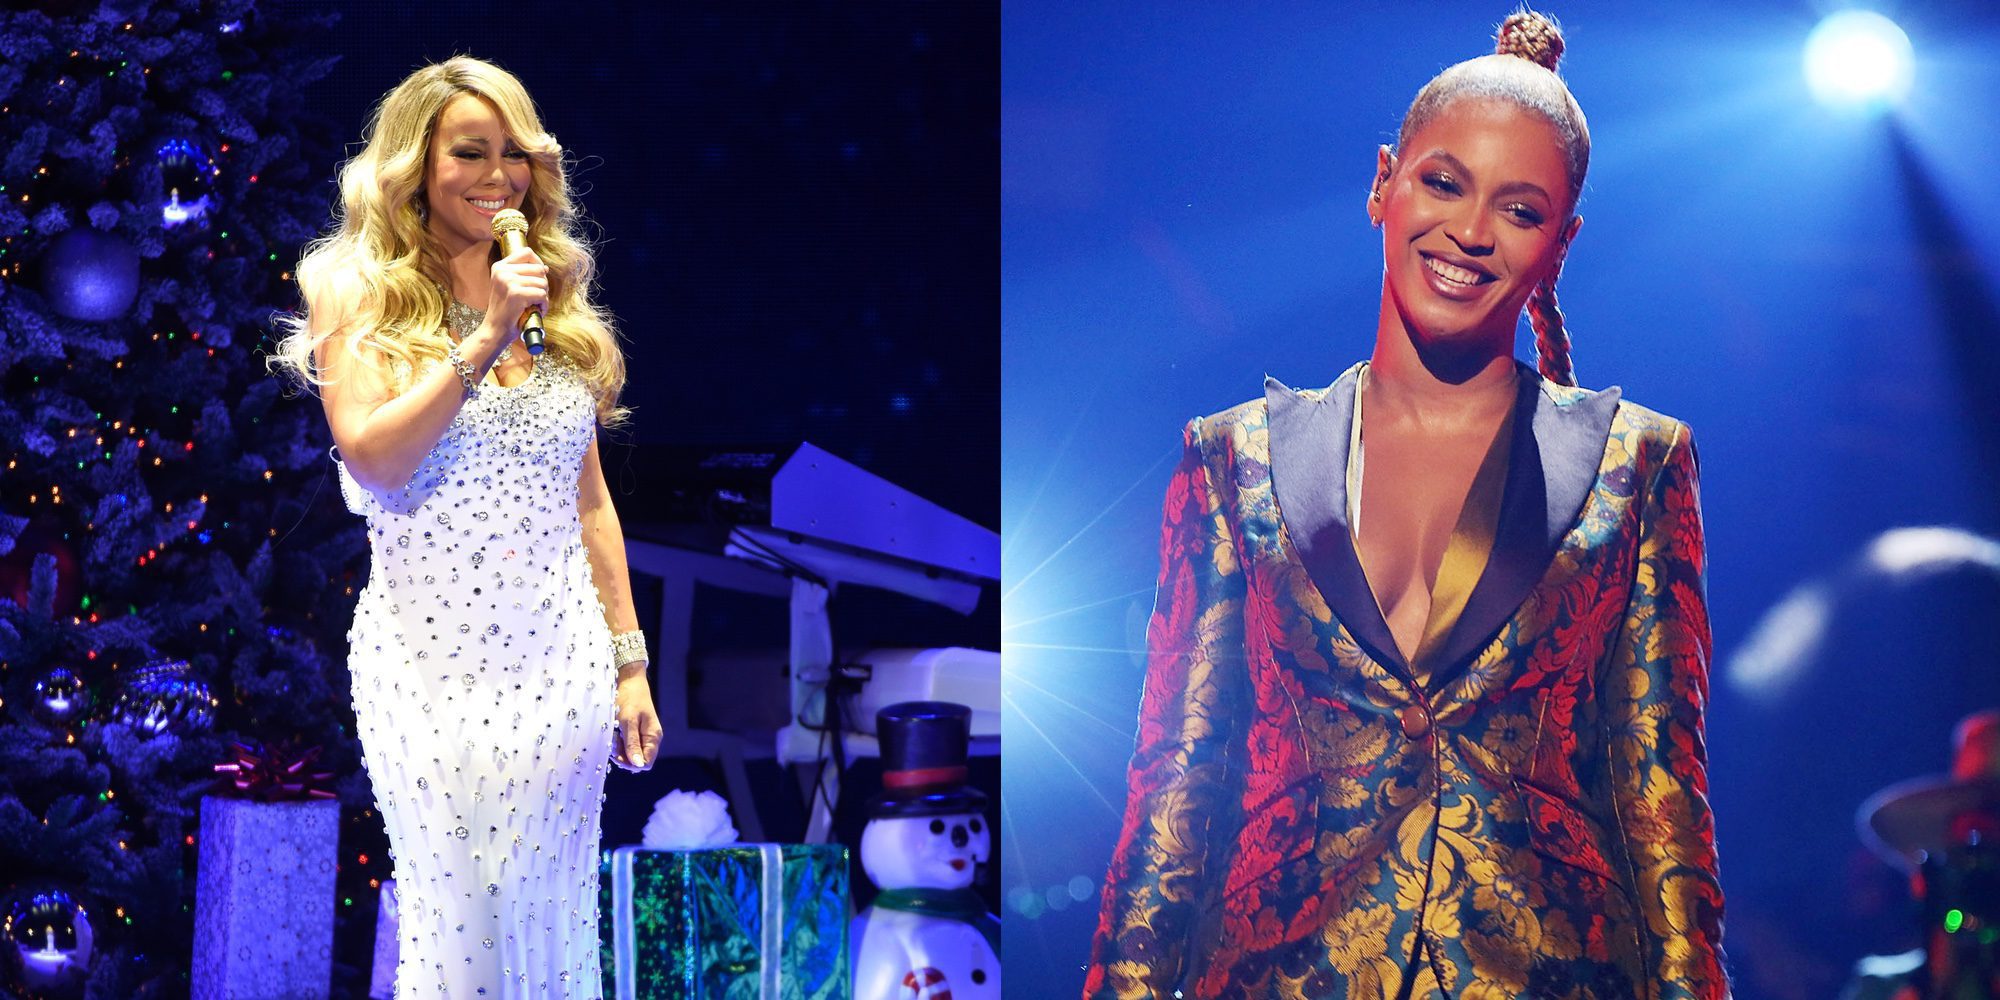 Encuentro entre dos divas: Beyoncé acude al concierto navideño de Mariah Carey